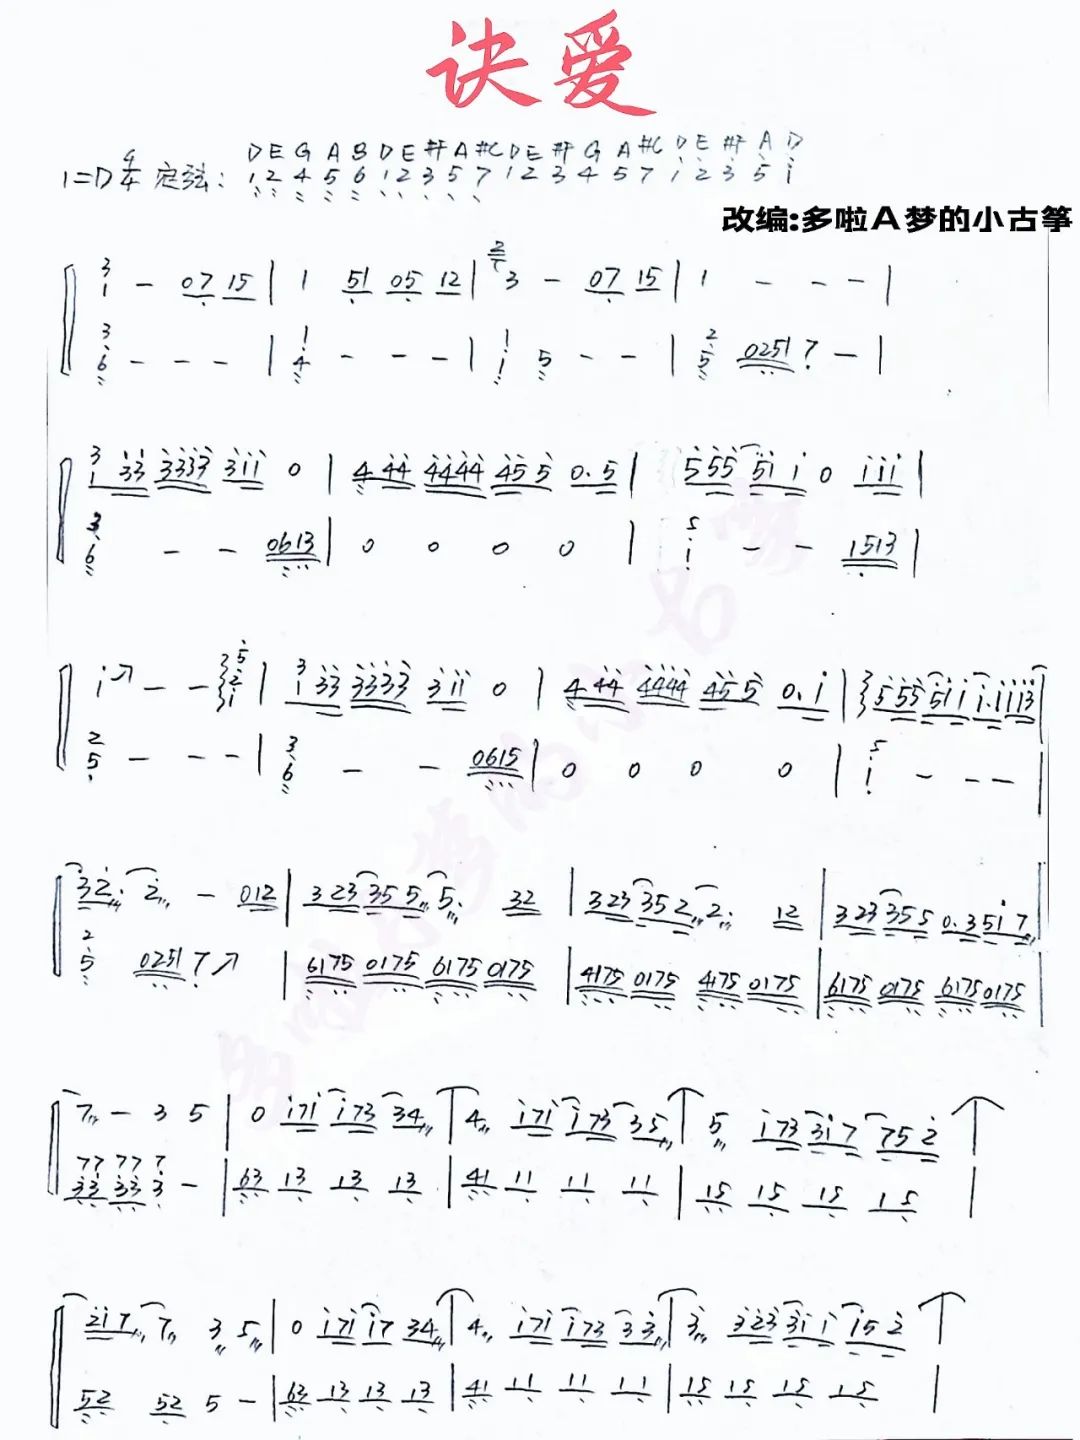 Jue ai（guzheng sheet music）